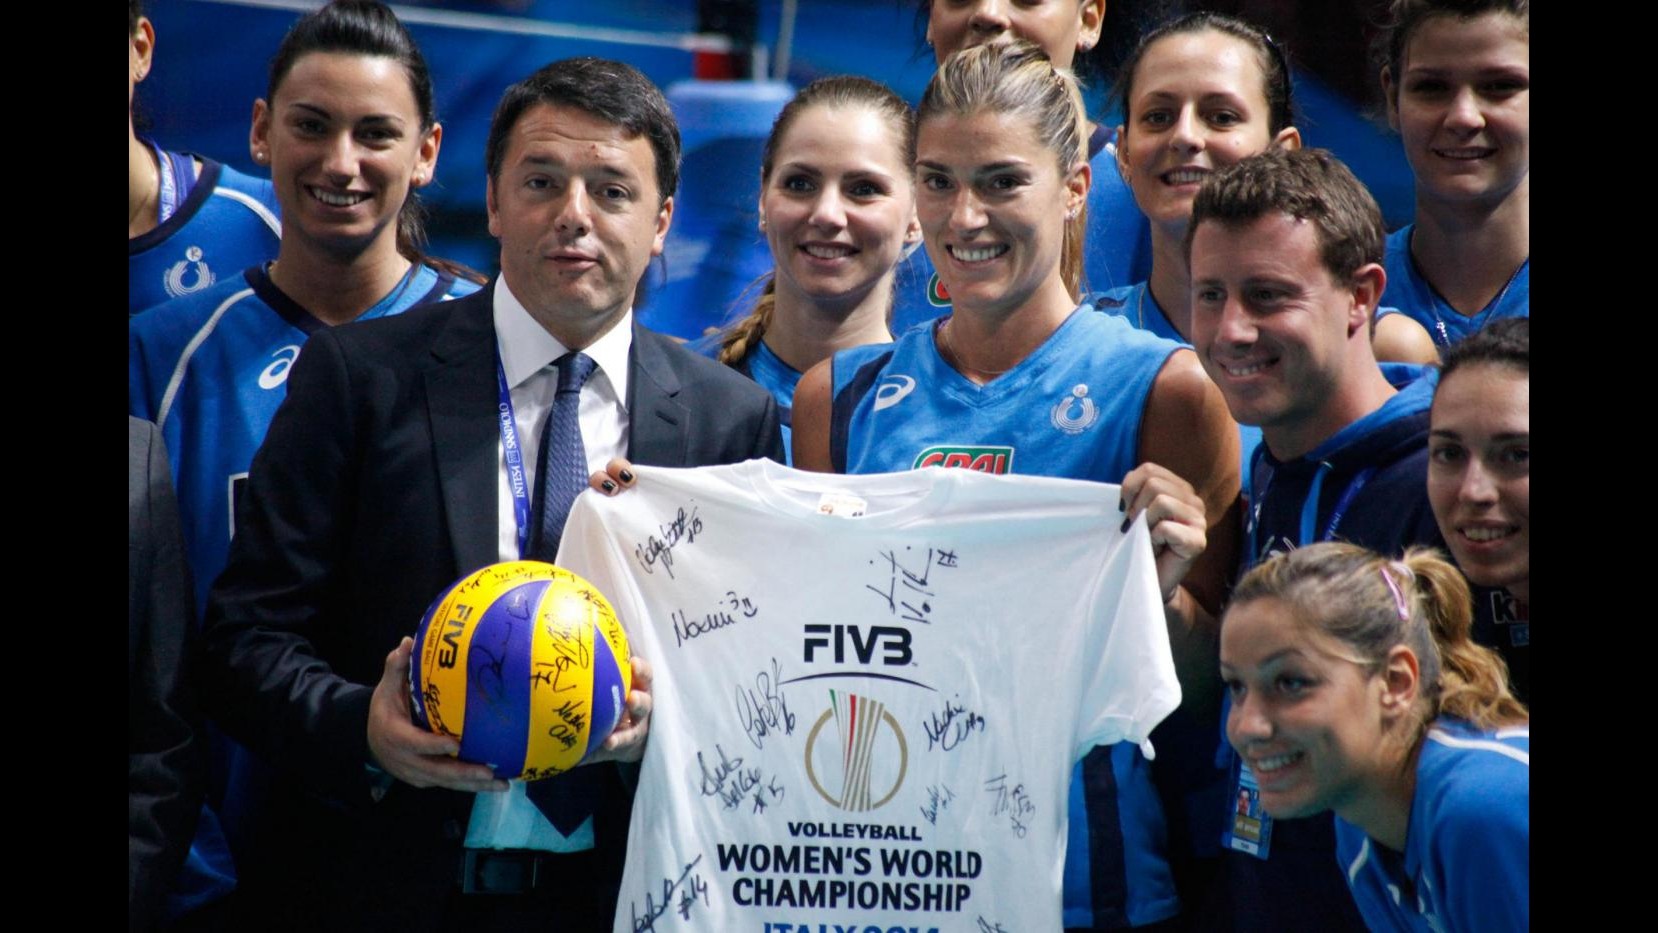 Mondiali Volley, stasera Italia-Usa. Renzi in visita alle Azzurre: Orgogliosi di voi